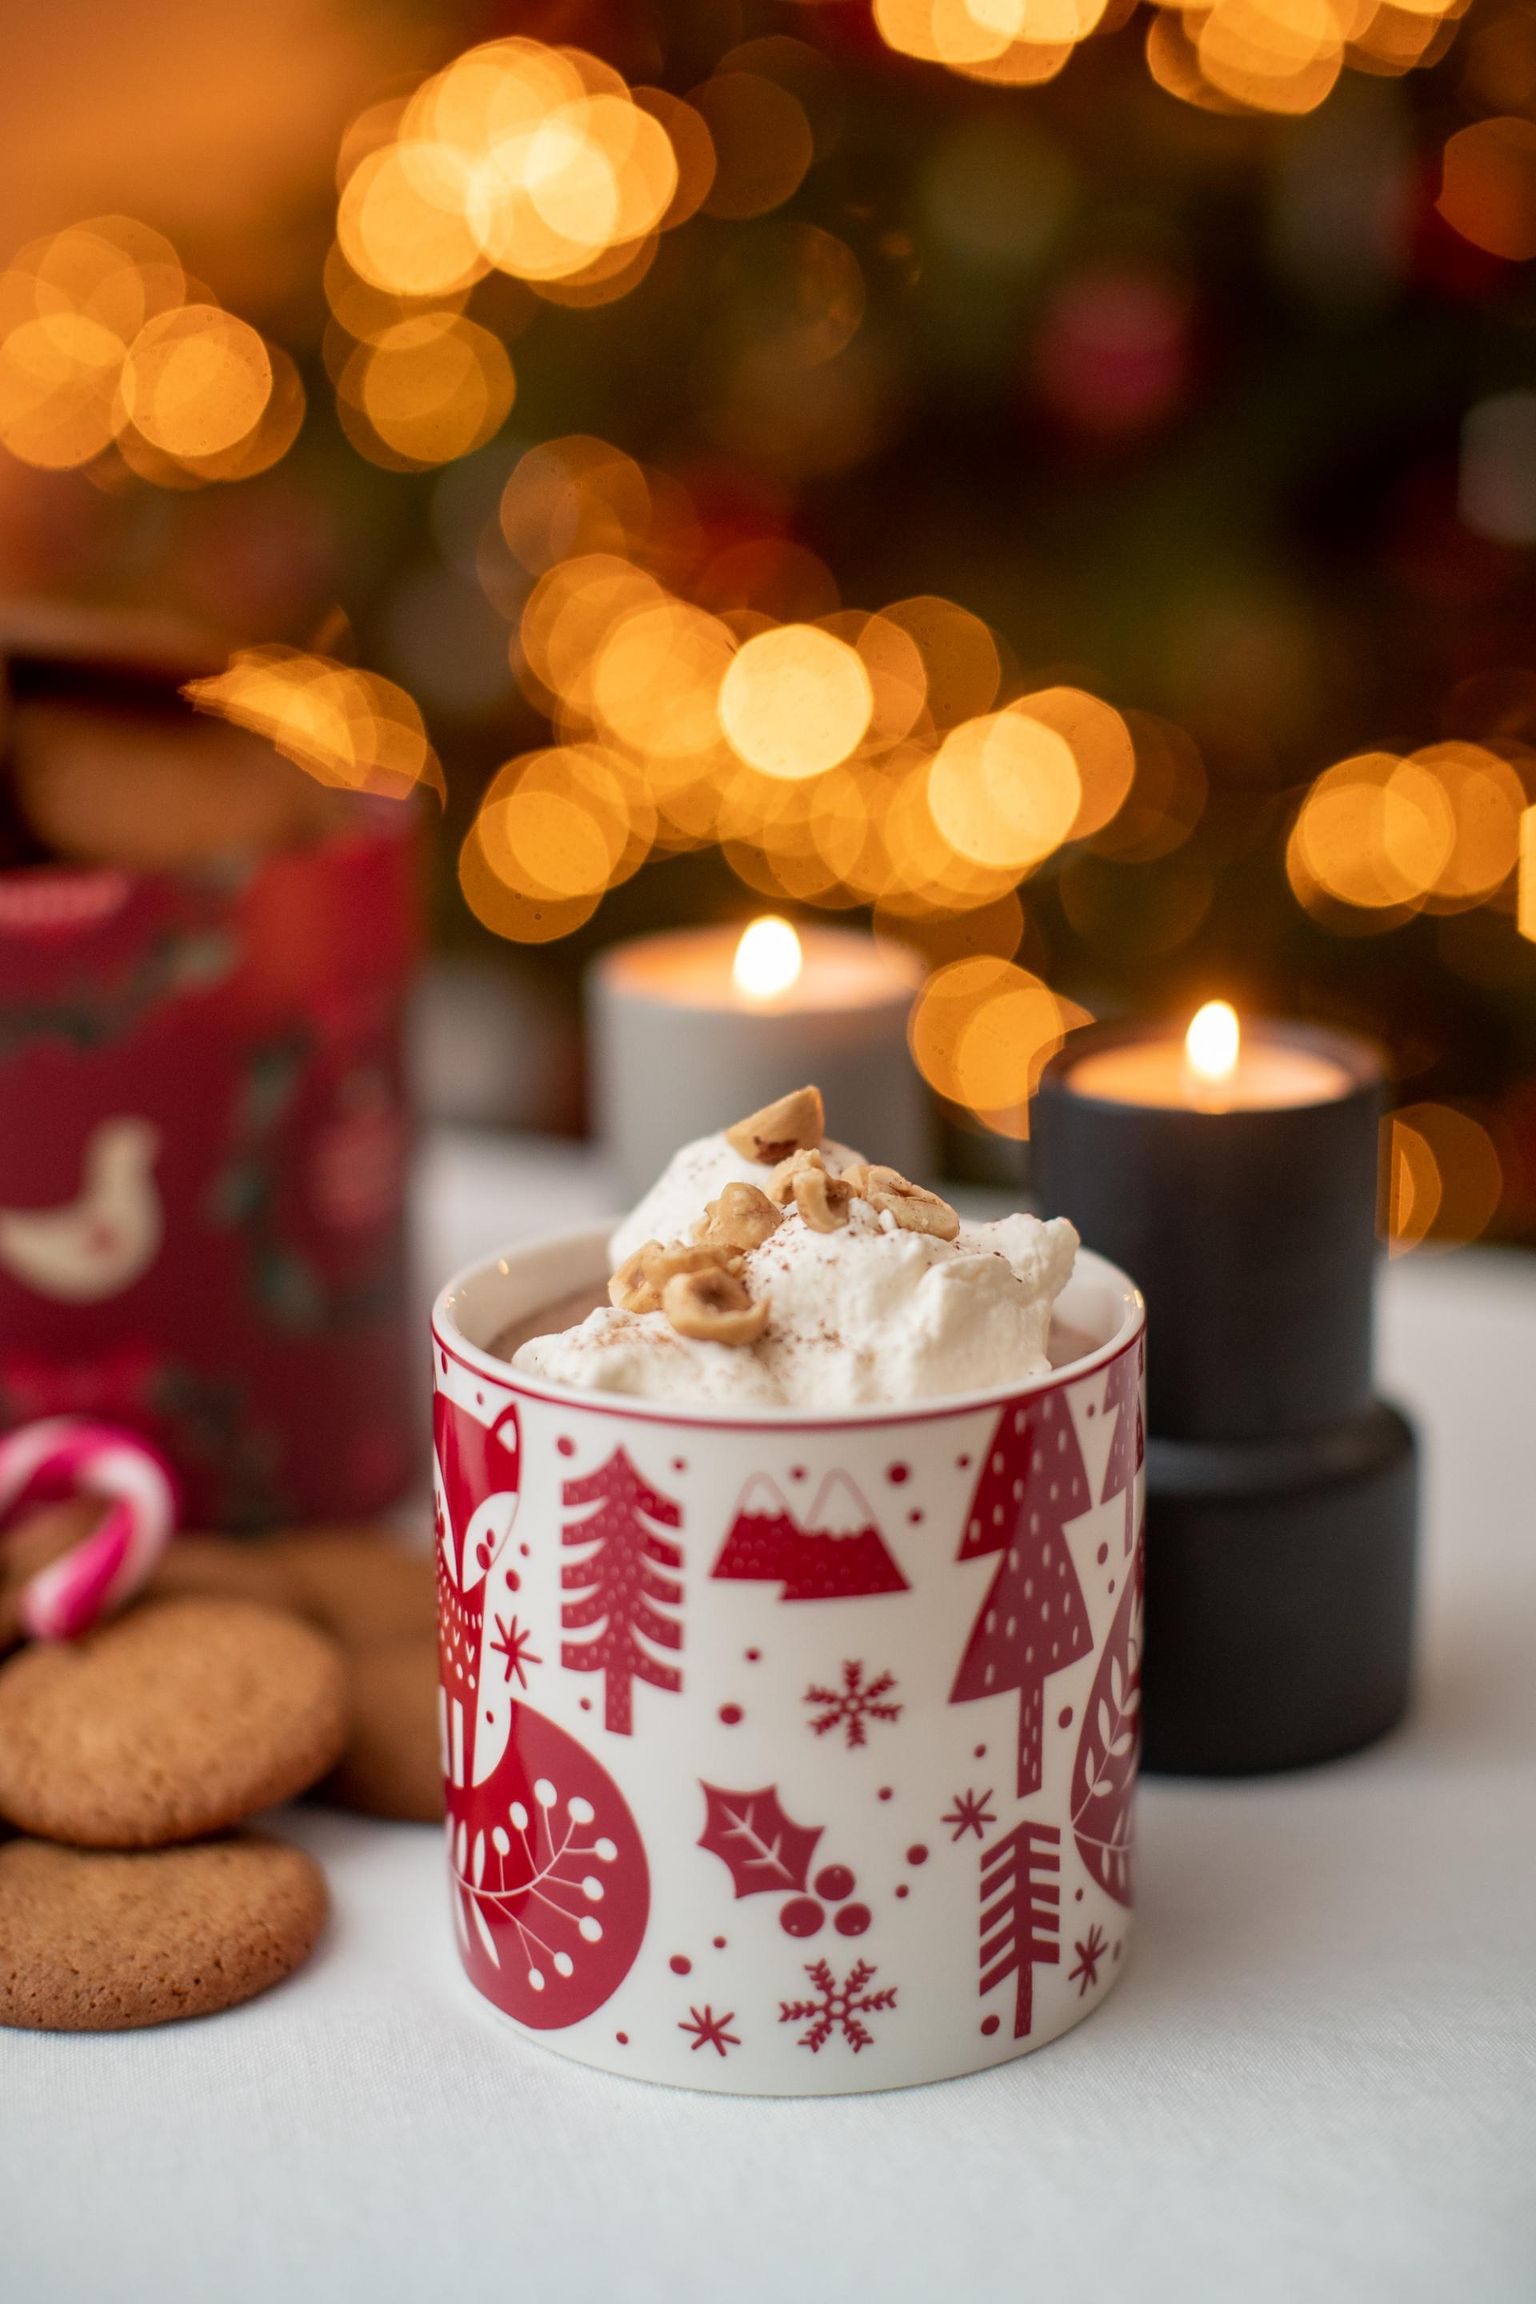 Kuum šokolaad ja krõbedad ingveriküpsised sobivad esimese jõulupüha hilisele hommikusöögile ideaalselt. FOTO: Eero Vabamägi